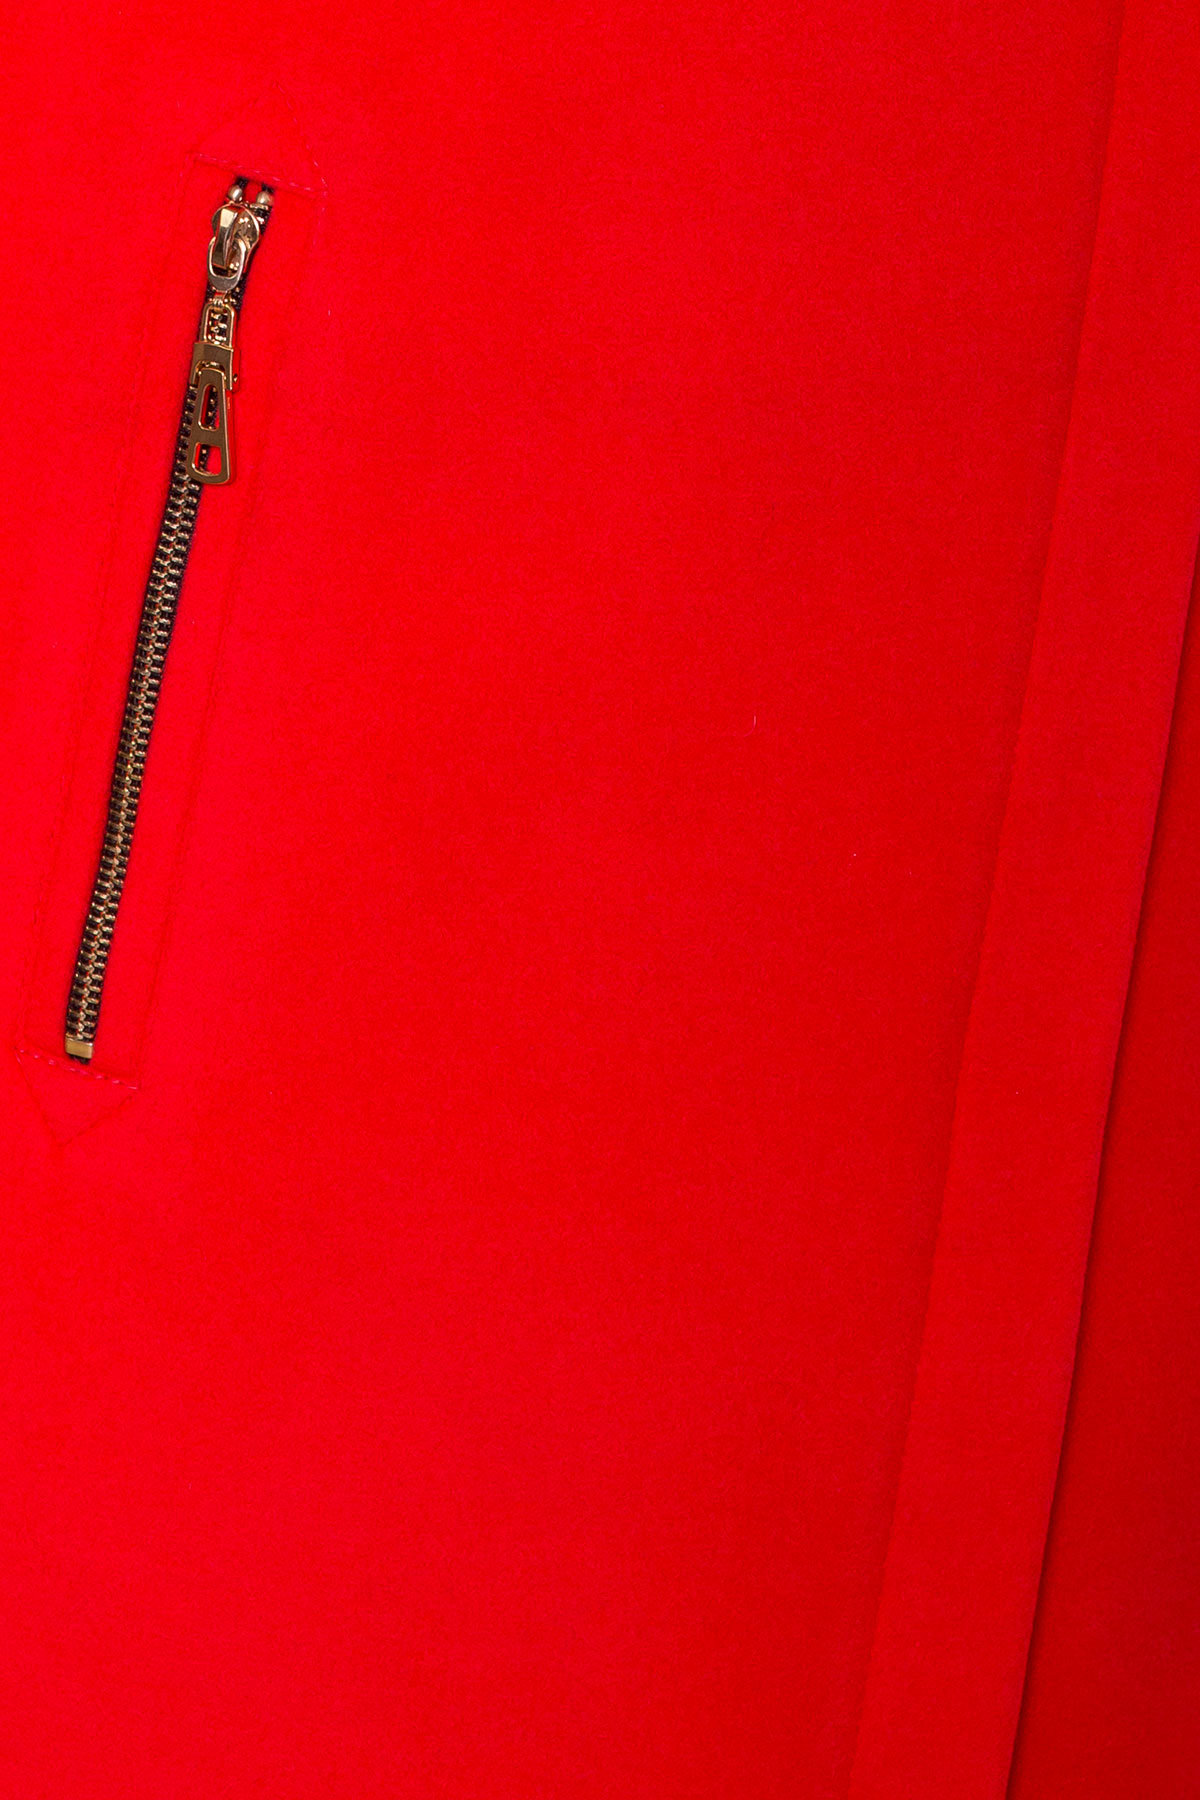 Красное демисезонное пальто Эльпассо 1 Donna 1096 АРТ. 38272 Цвет: Красный B-020 - фото 5, интернет магазин tm-modus.ru